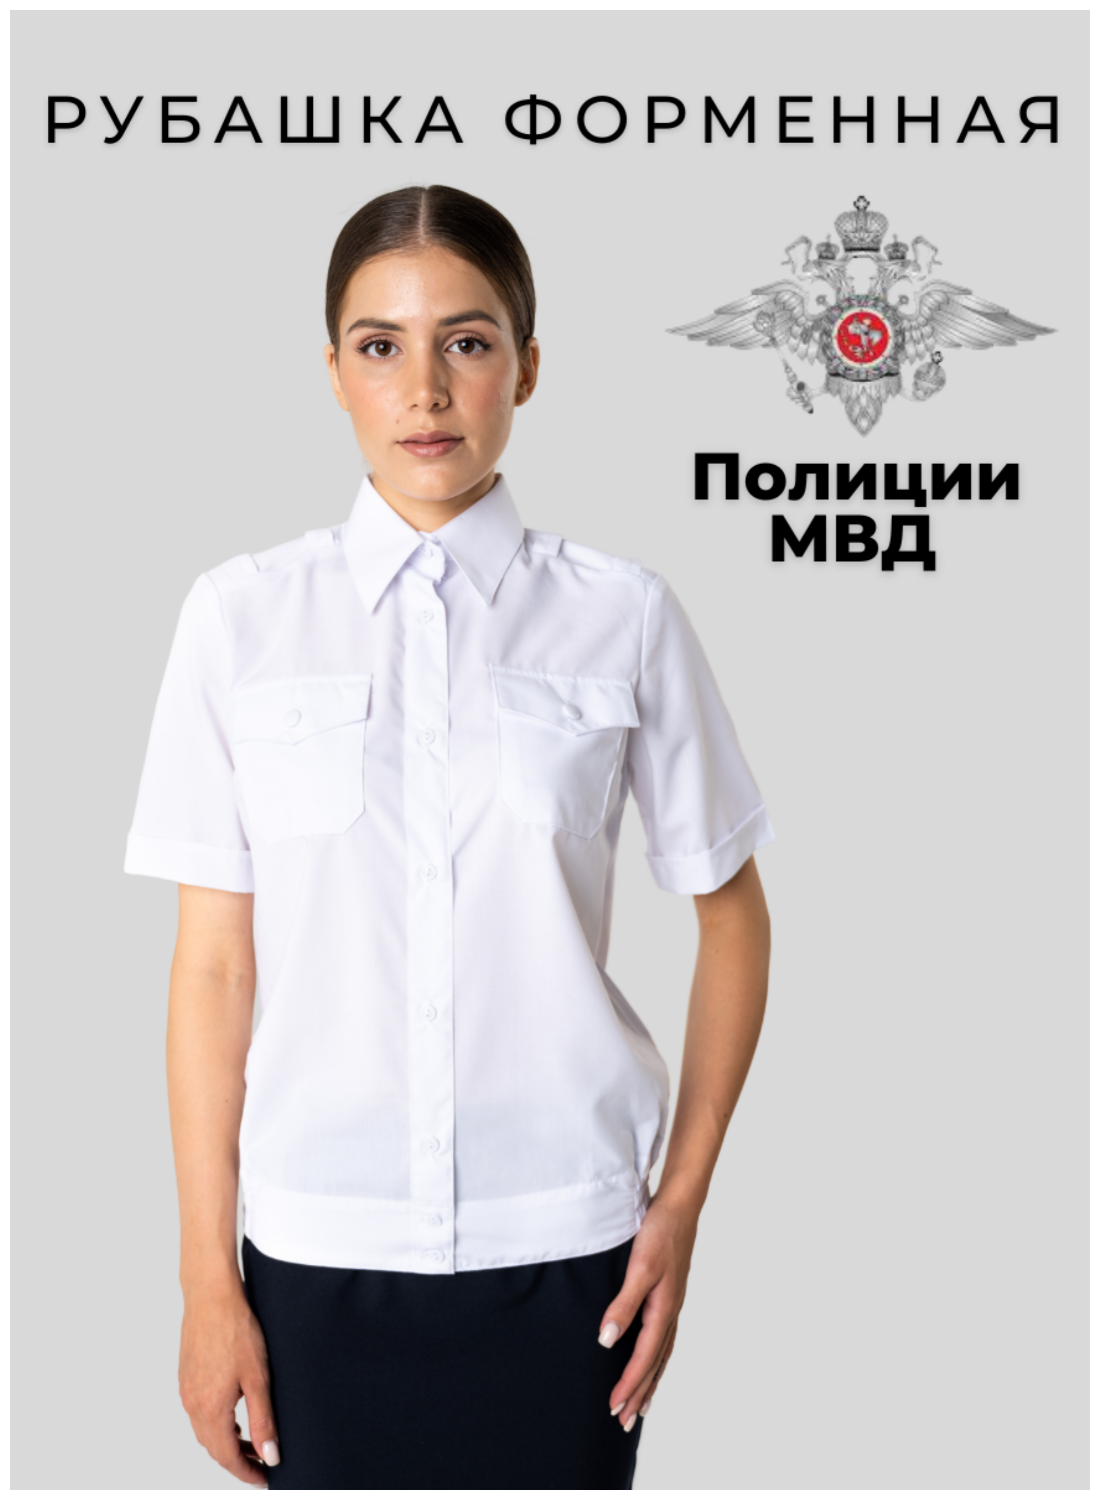 Рубашка полиции белая женская/Рубашка короткий рукав/Полиция/Белая рубашка/Уставная/Форменная рубашка размер 36/4 — купить в интернет-магазине по низкой цене на Яндекс Маркете